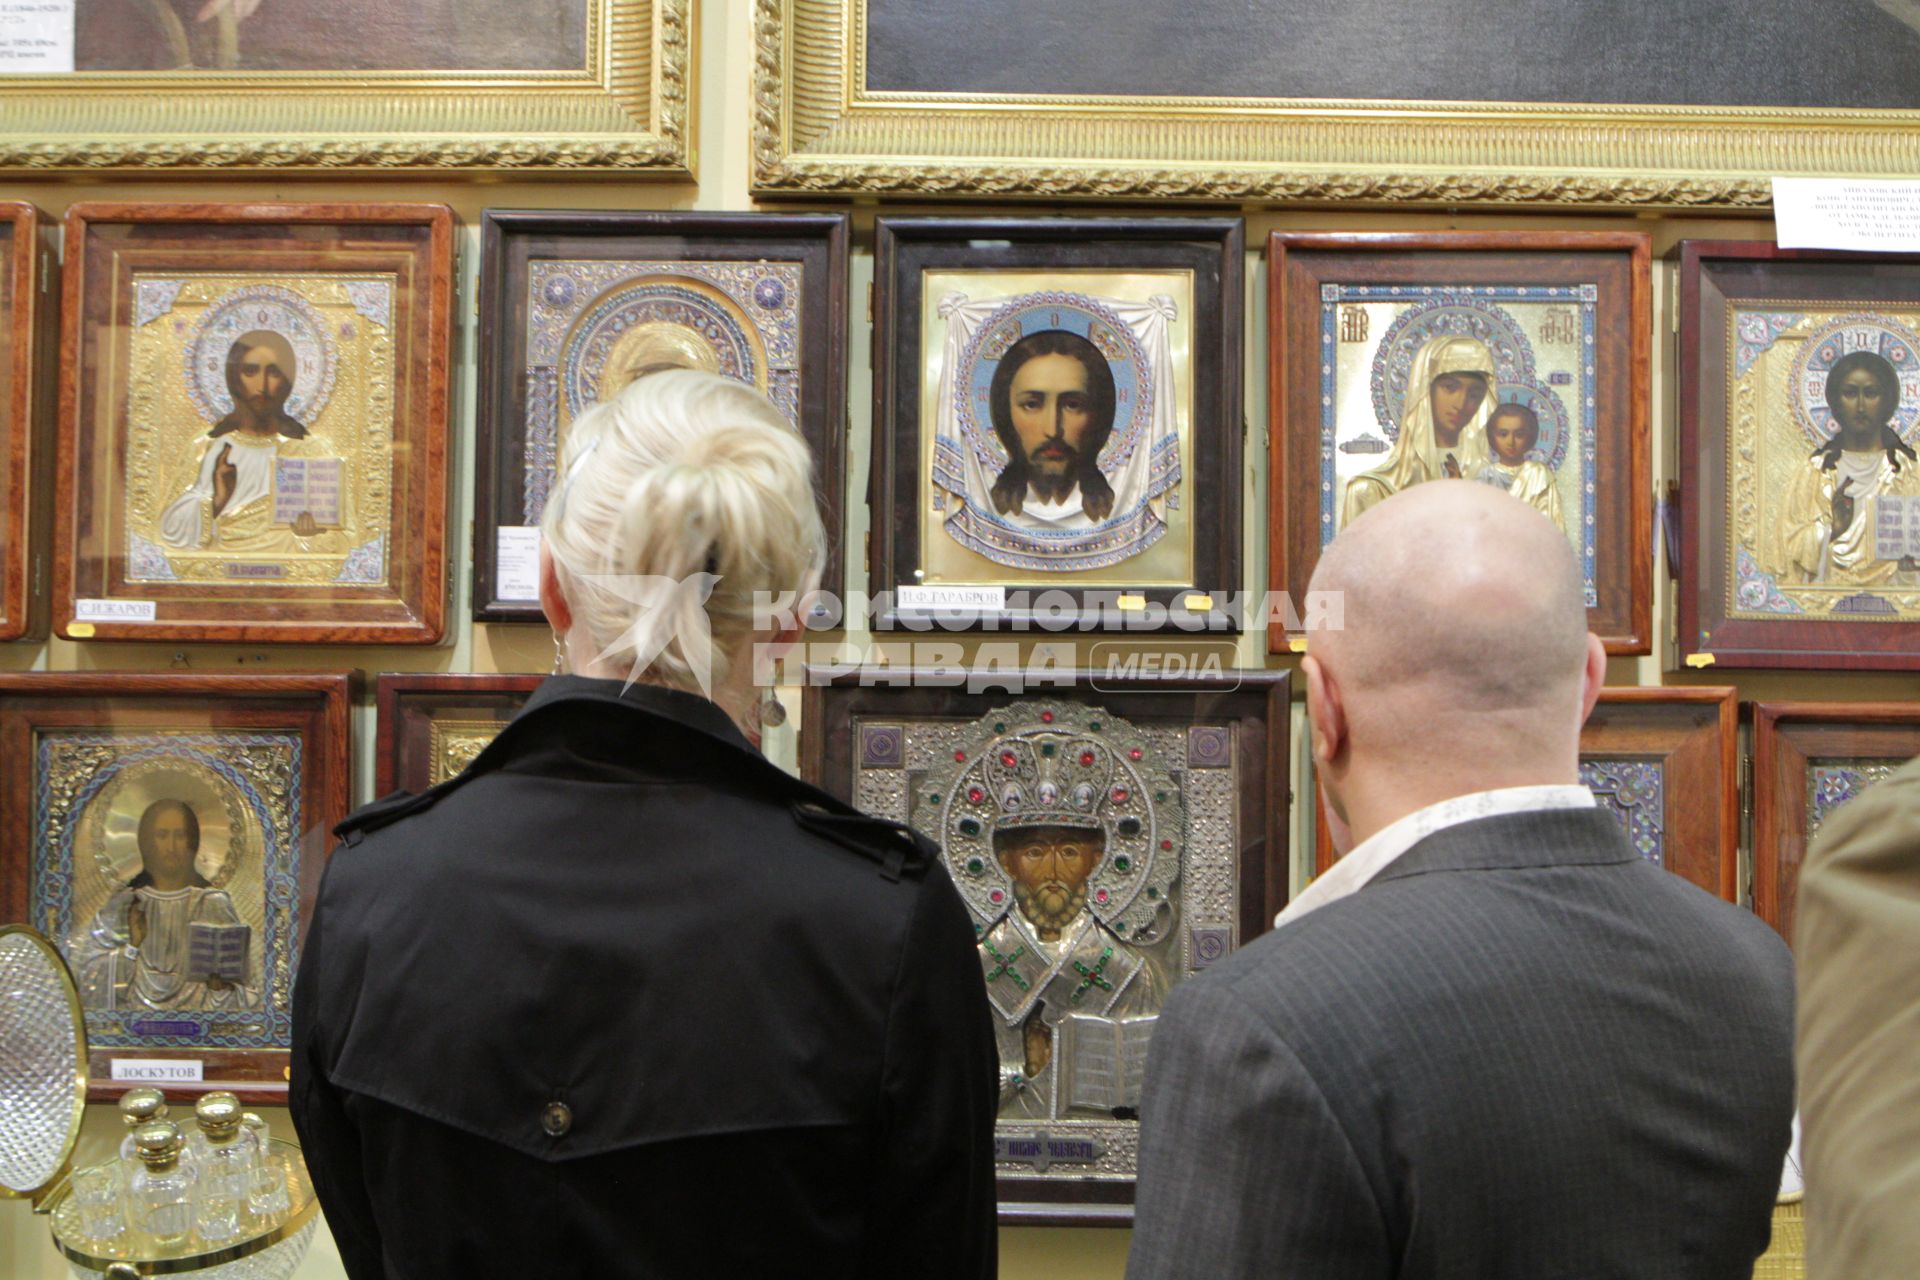 ЦДХ. 33-ий Российский антикварный салон. На снимке: посетители салона рассматривают иконы.